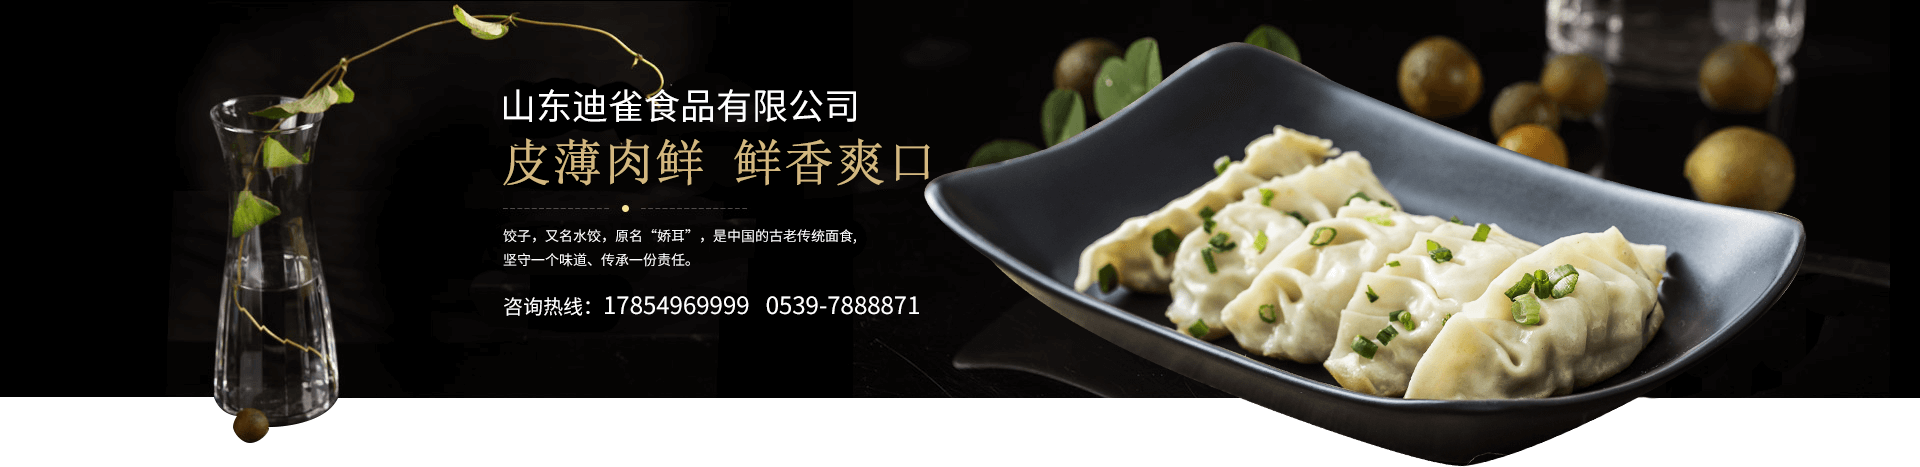 山东迪雀食品有限公司是一家生产速冻饺子,馄饨的批发厂家,同时经营手工粽子,山东馒头等一系列美食,带给您体验不一样的味蕾享受